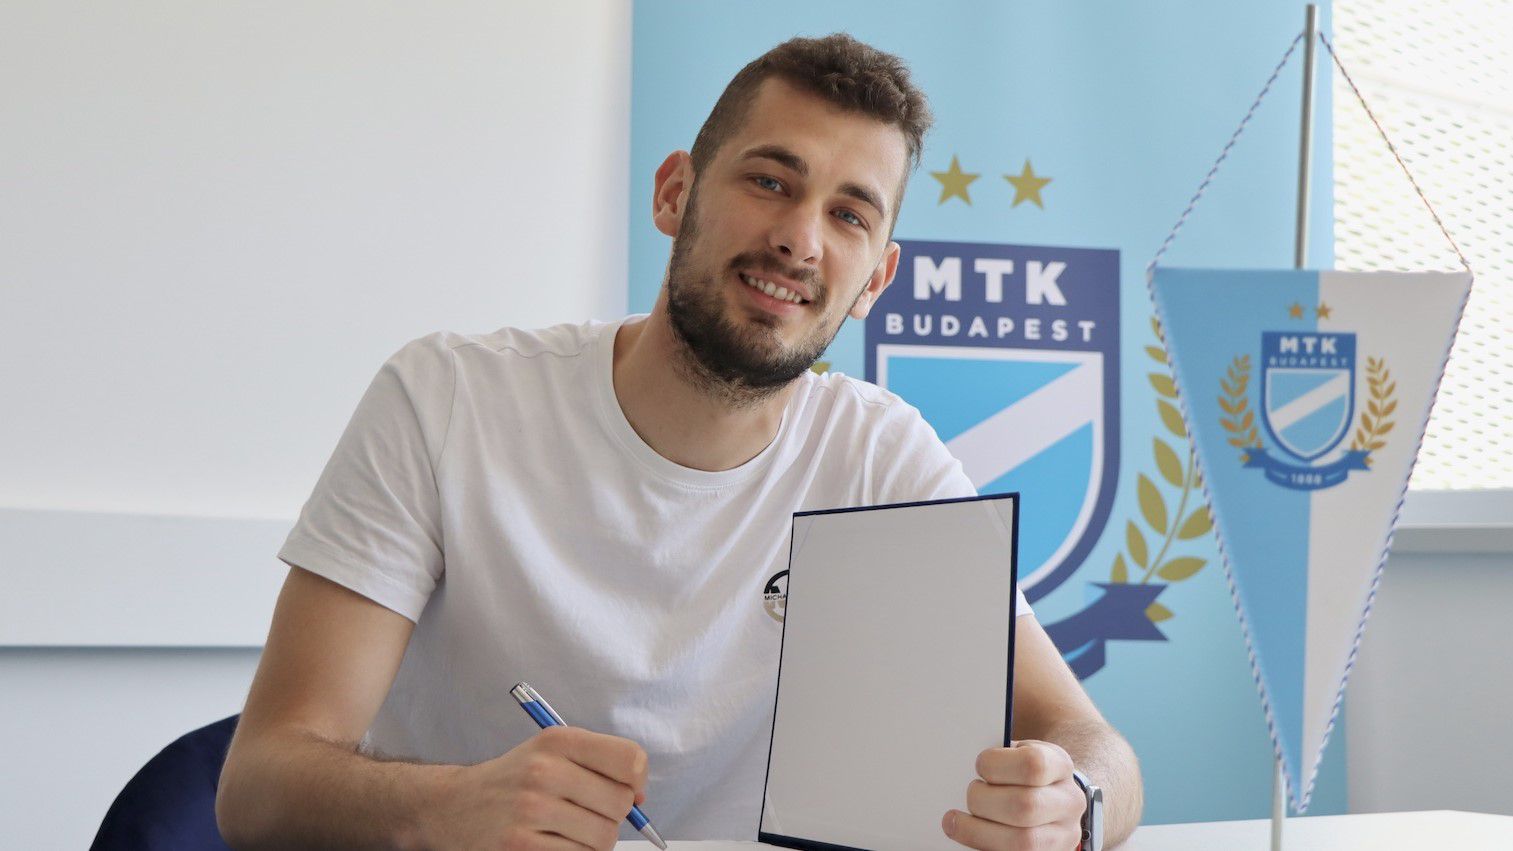 Az MTK kivásárolta élő szerződéséből Demjén Patrikot, aki három évre írt alá (Fotó: mtkbudapest.hu)